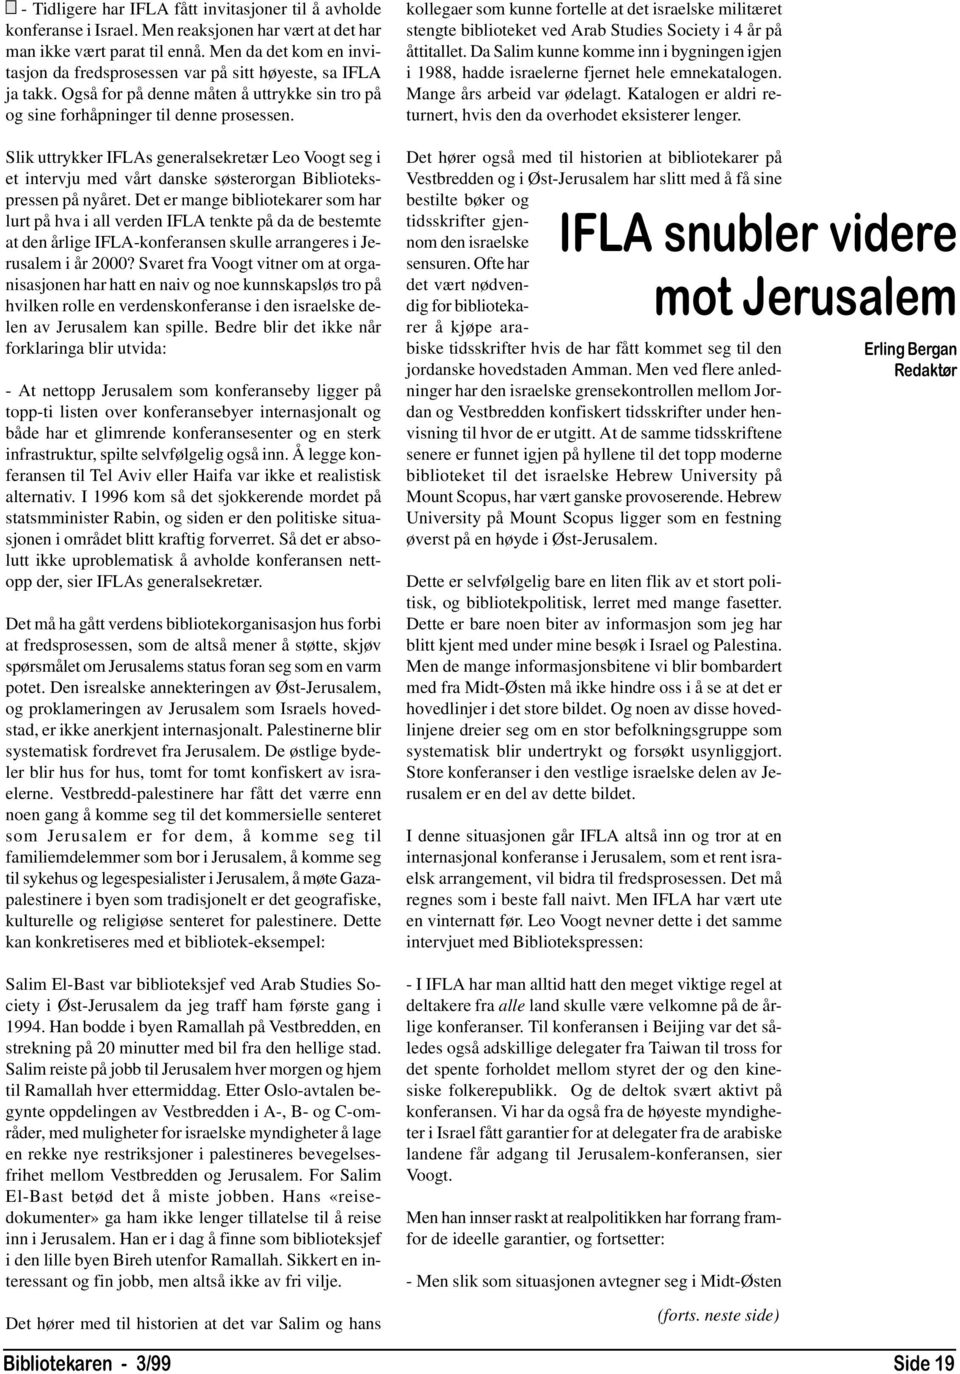 Slik uttrykker IFLAs generalsekretær Leo Voogt seg i et intervju med vårt danske søsterorgan Bibliotekspressen på nyåret.